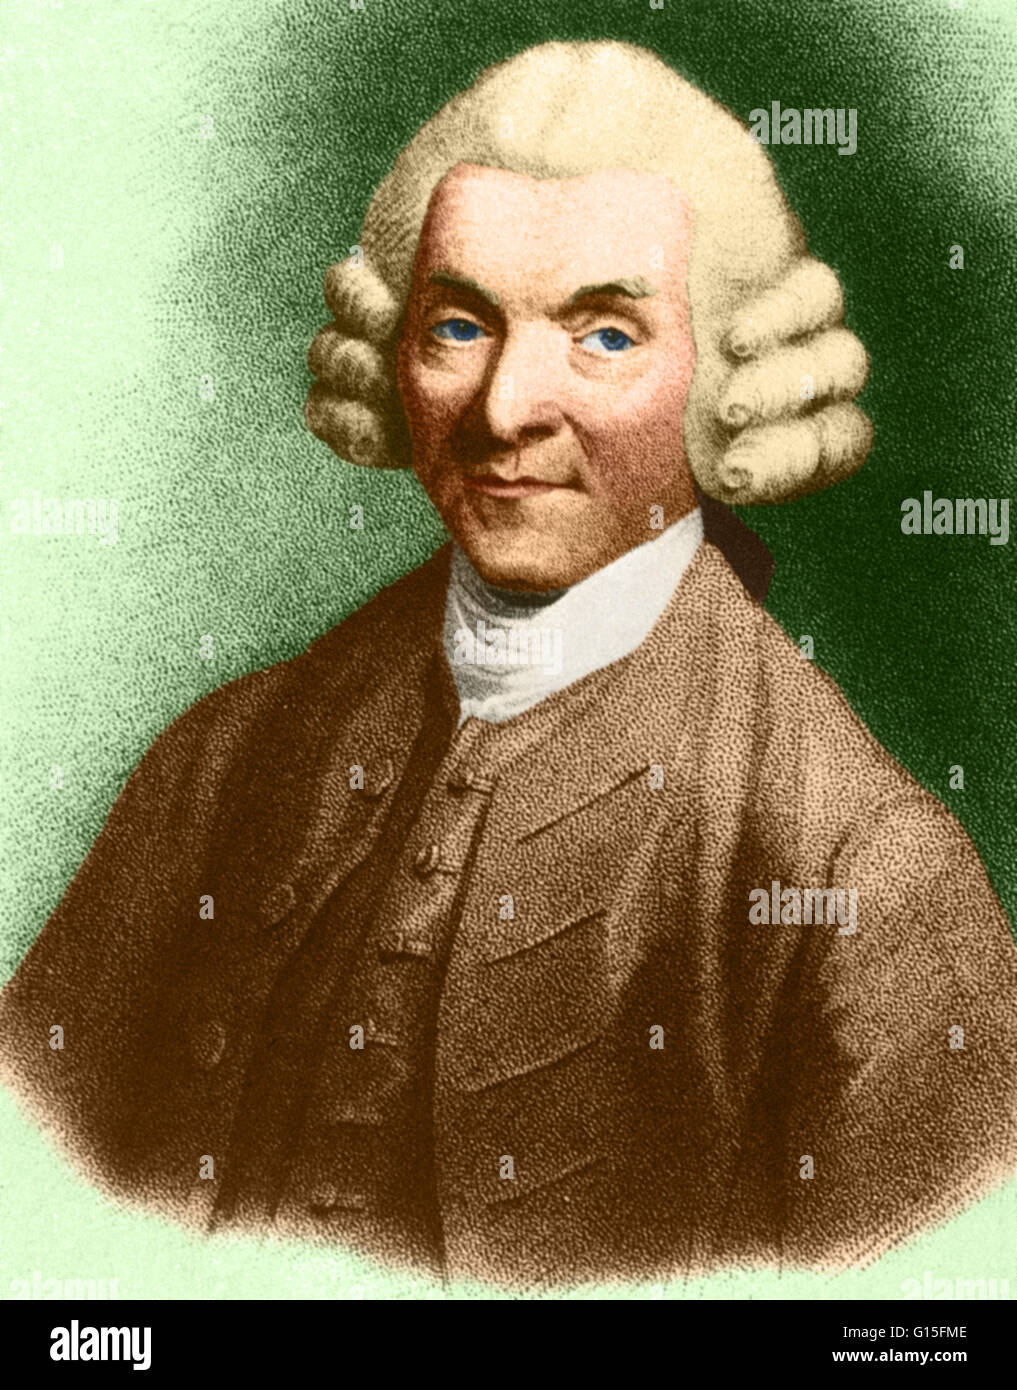 Farbe verbesserte Porträt von William Hunter (1718-1783), schottischer Anatom und Arzt. Zusammen mit seinem Bruder John Hunter, gründete er die erste Schule der Anatomie in London. Seine Veröffentlichungen enthalten Studien zur menschlichen Zähnen und der schwangeren Gebärmutter. Stockfoto